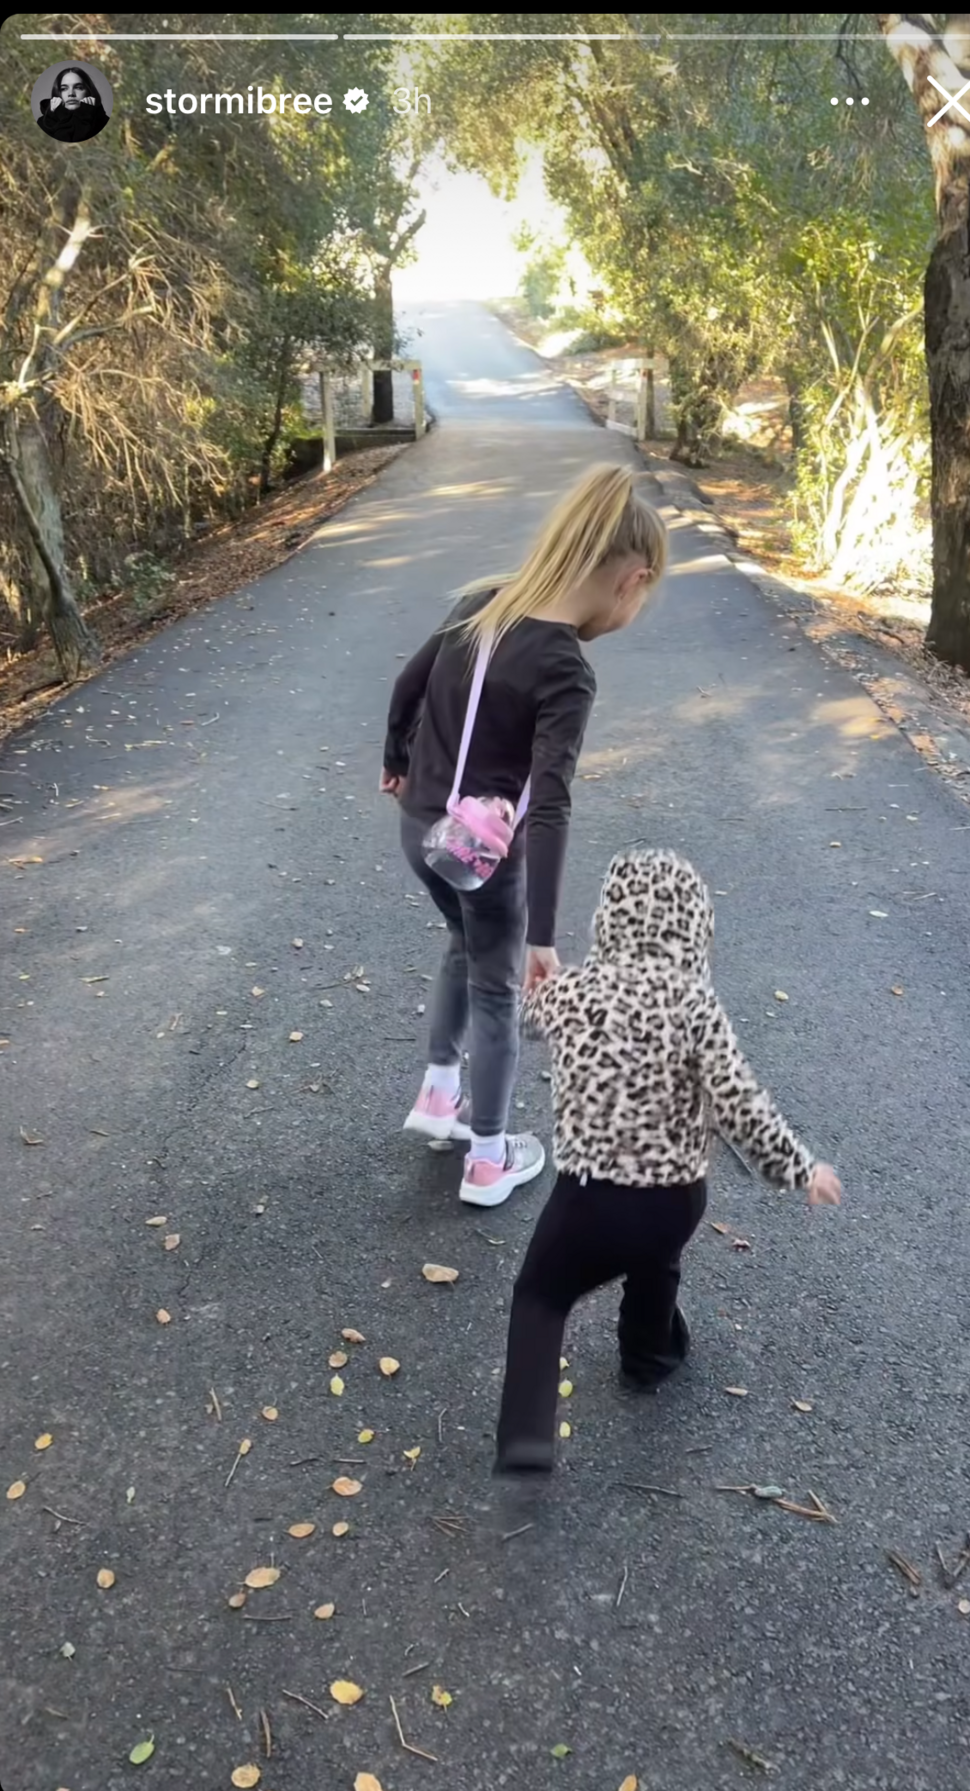 Stormi Bree's daughter hikes with Malti Marie Jonas 